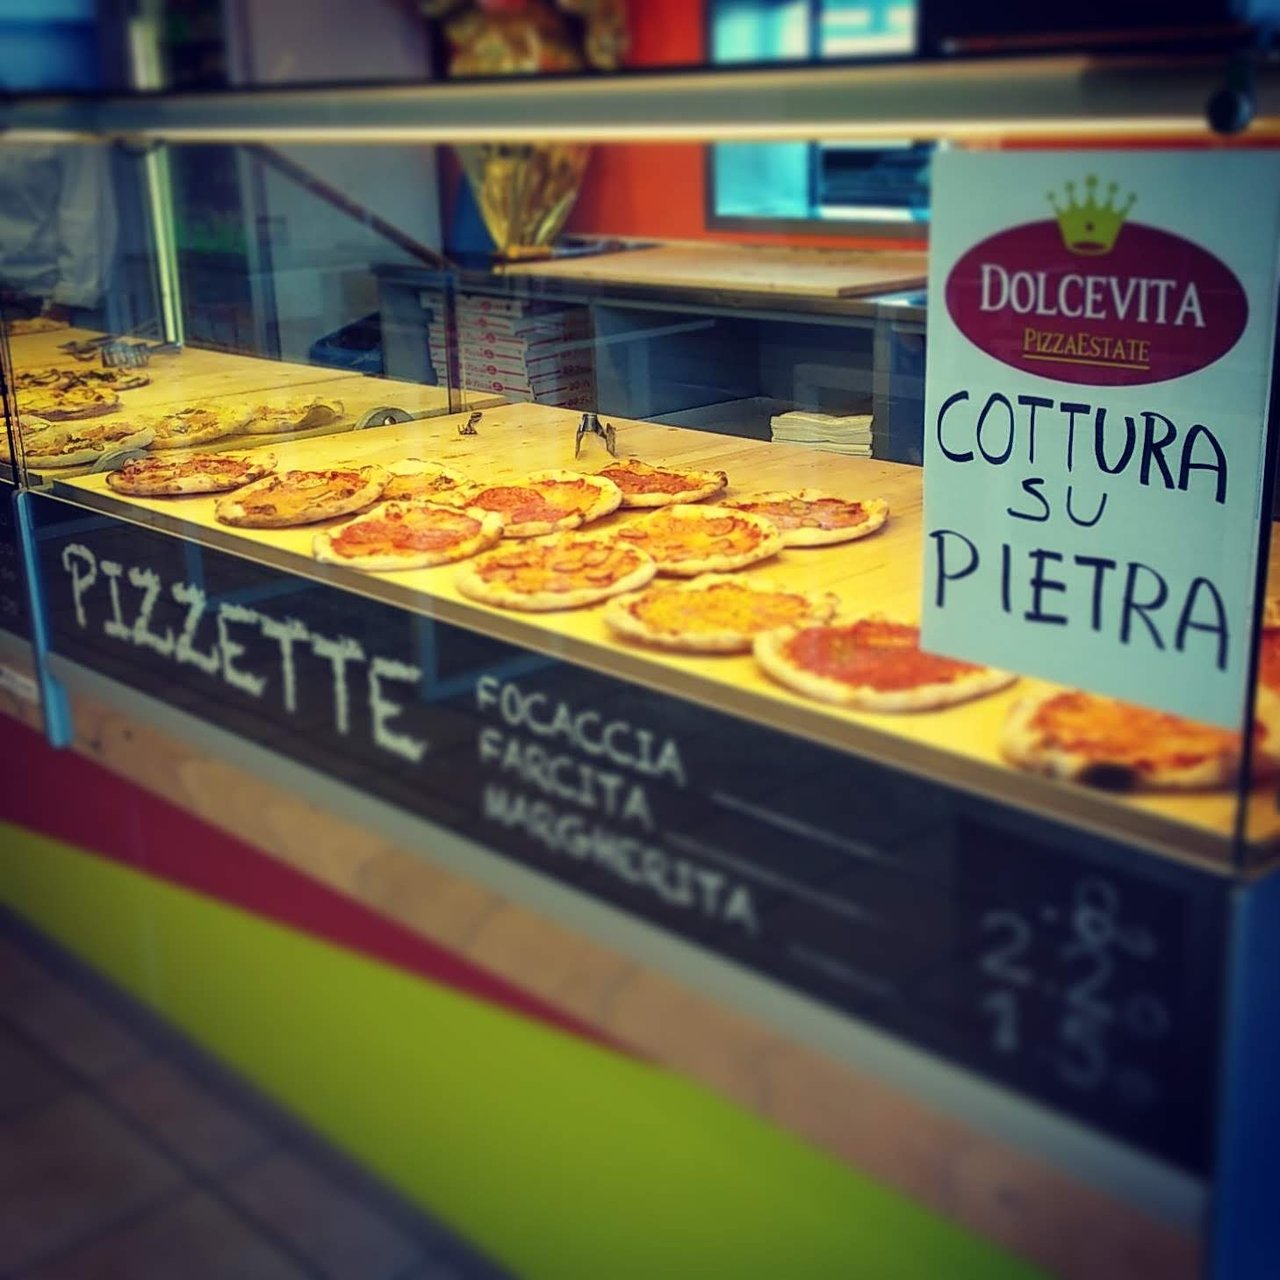 Pizzeria Dolcevita, Porto San Giorgio